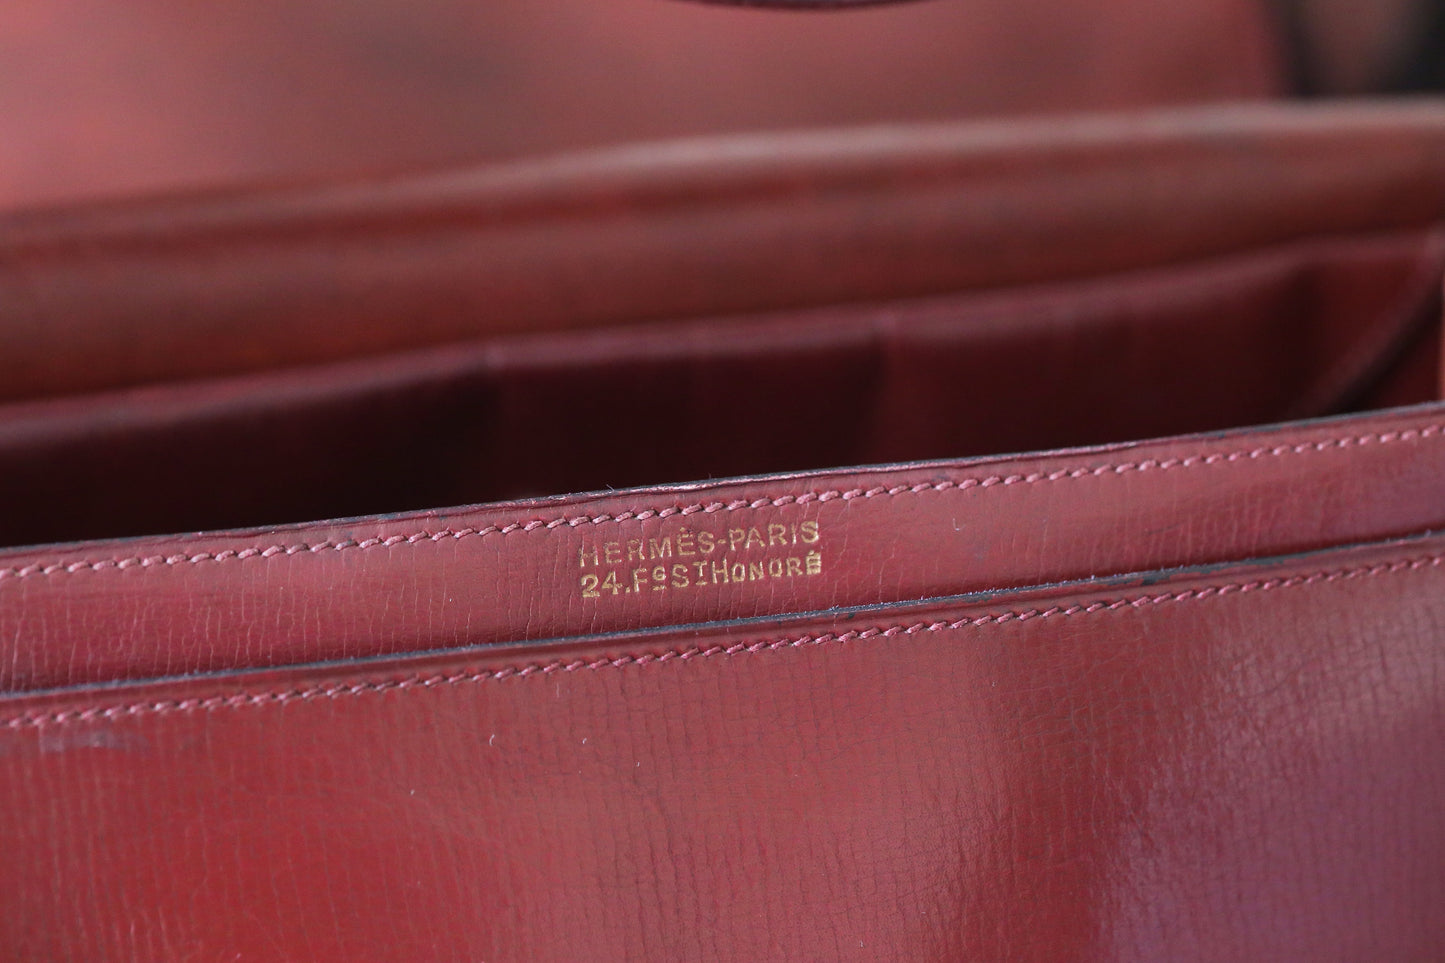 Hermès sac à main vintage modèle princesse en cuir bordeaux